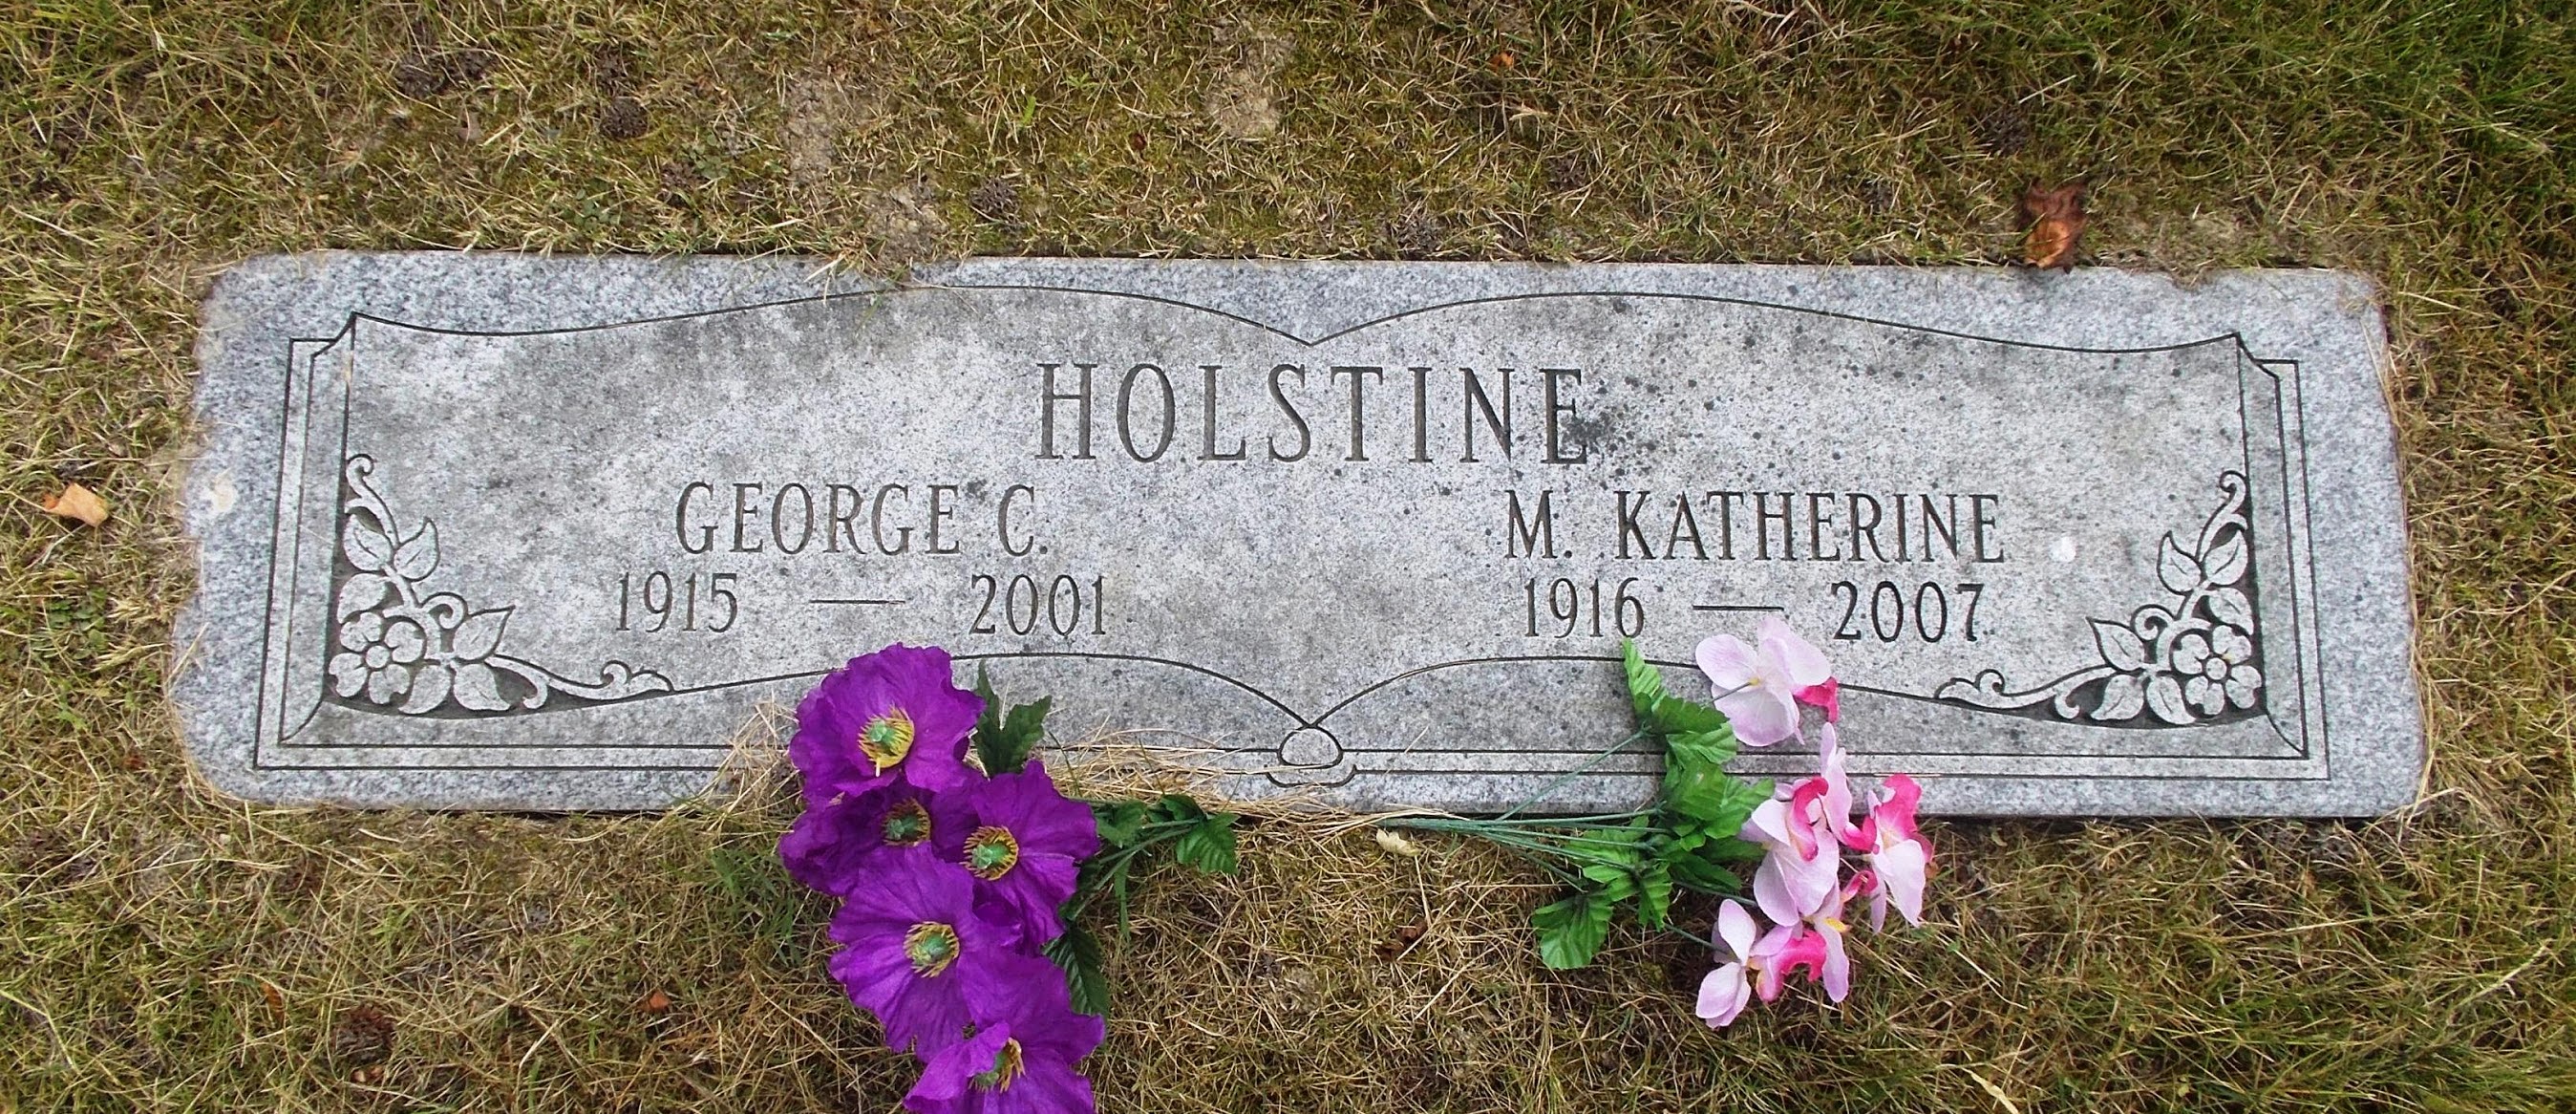 George C Holstine